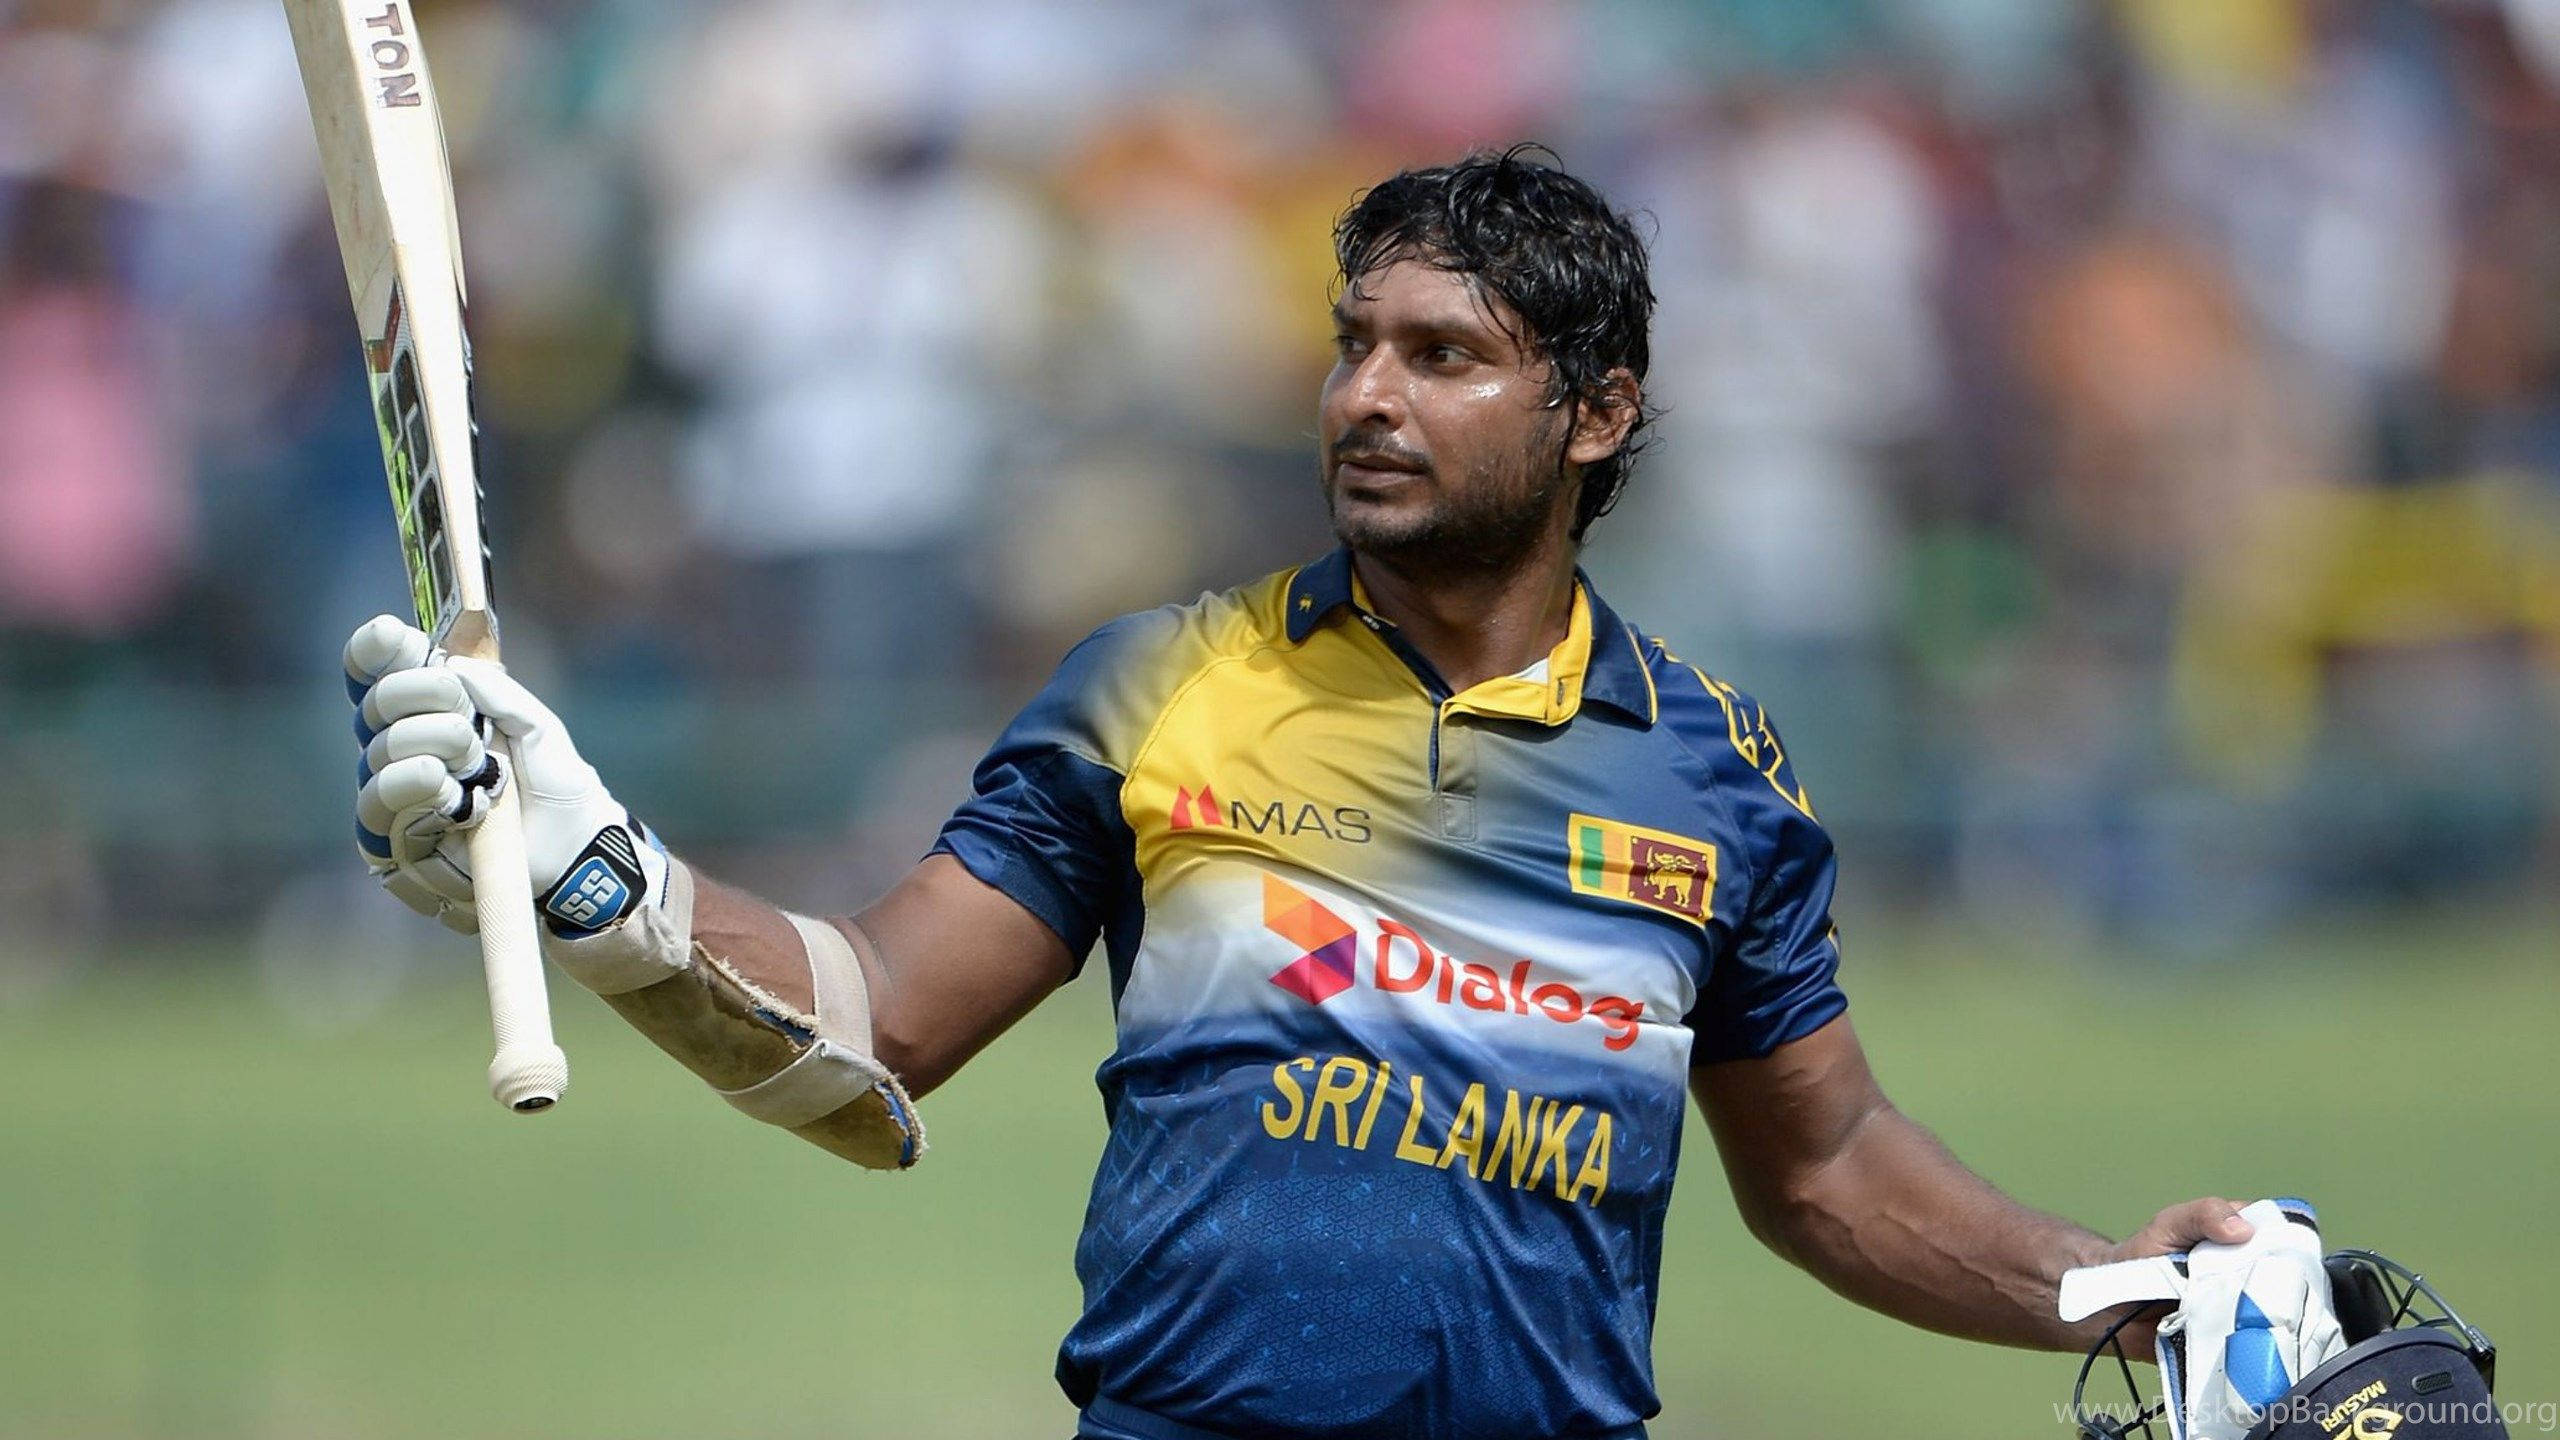 Papelde Parede Do Sri Lanka Cricket Em 4k. Papel de Parede